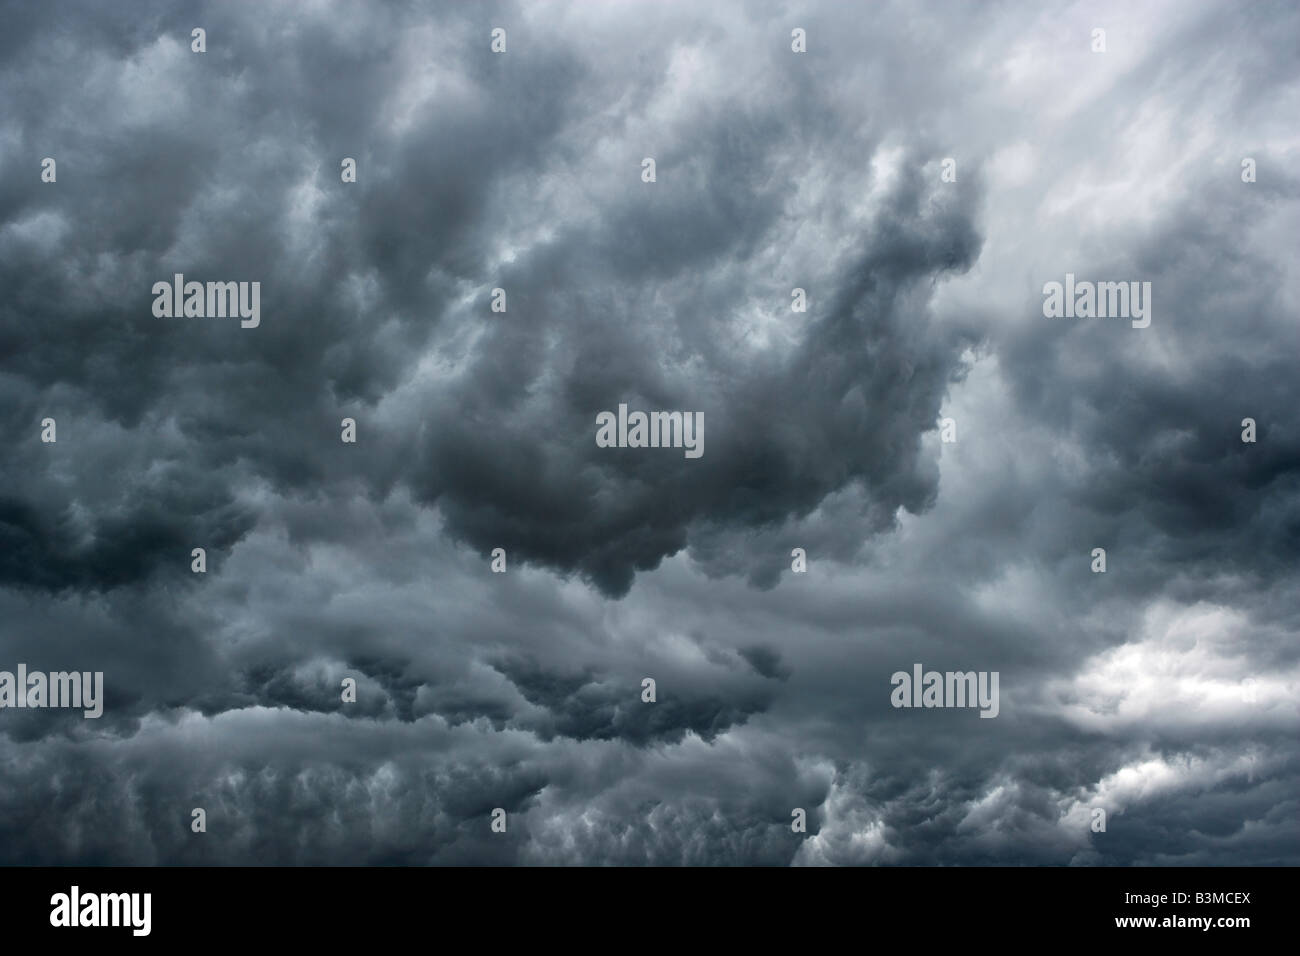 Darunter ein Thunder cloud Zelle dunkel und wirbelnden Wolken kurz vor einem schweren Regen Stockfoto